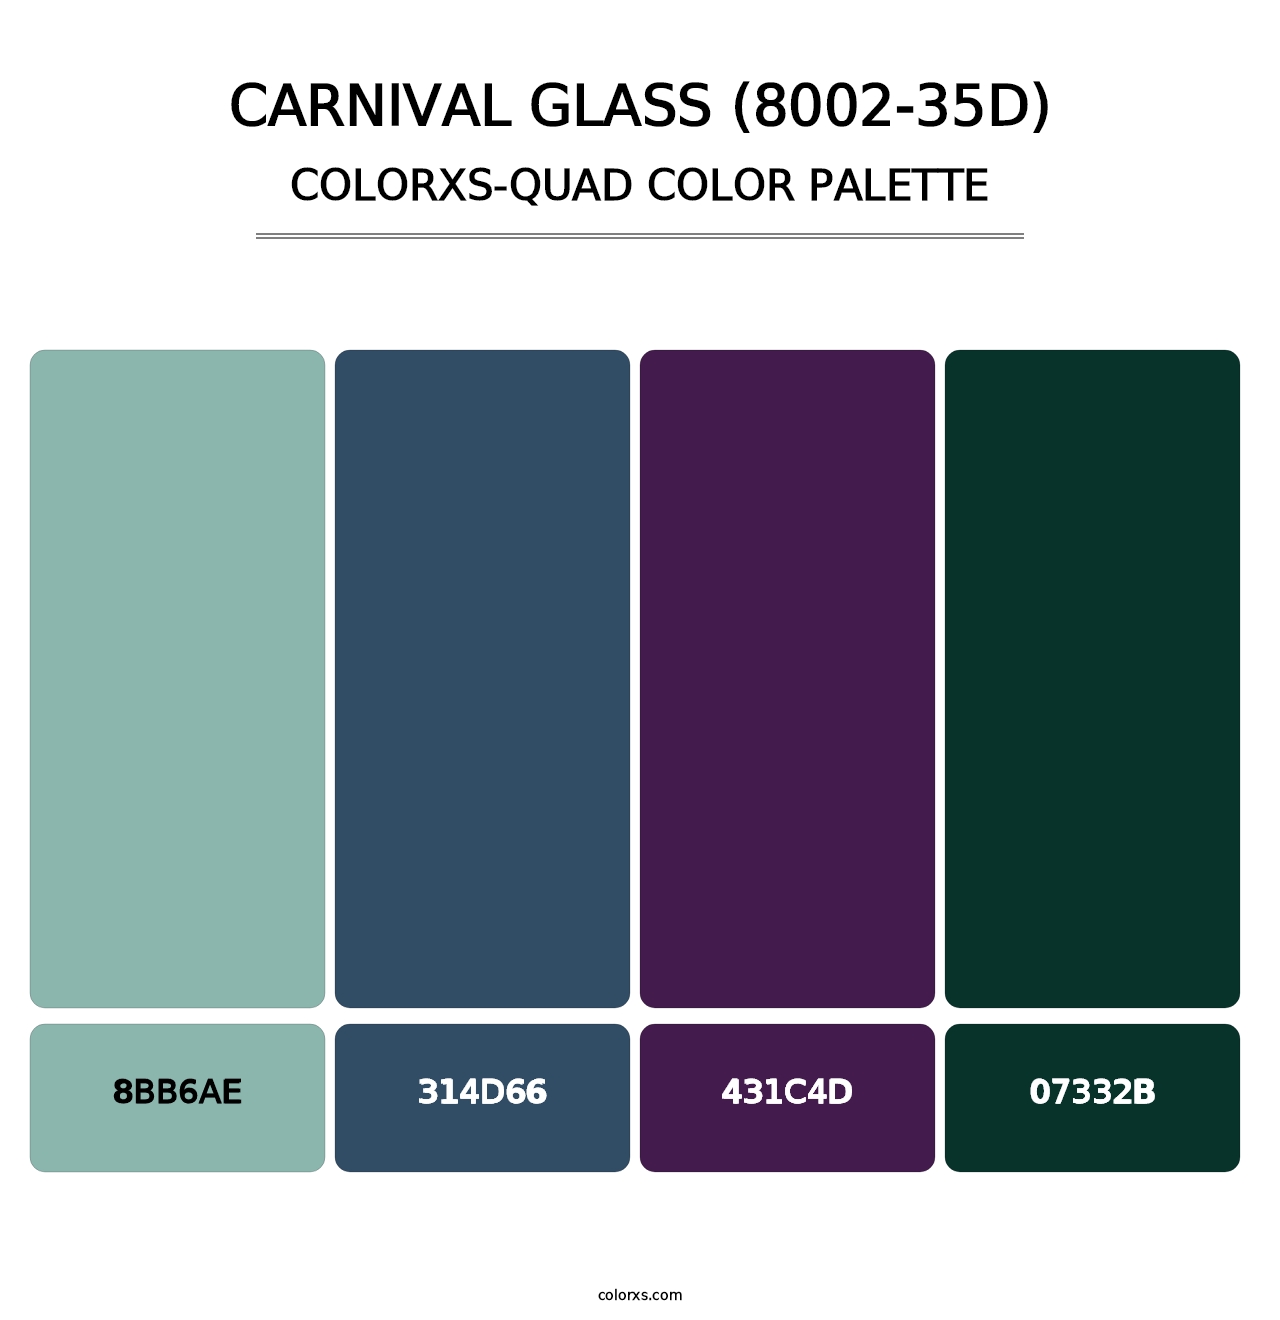 Carnival Glass (8002-35D) - Colorxs Quad Palette